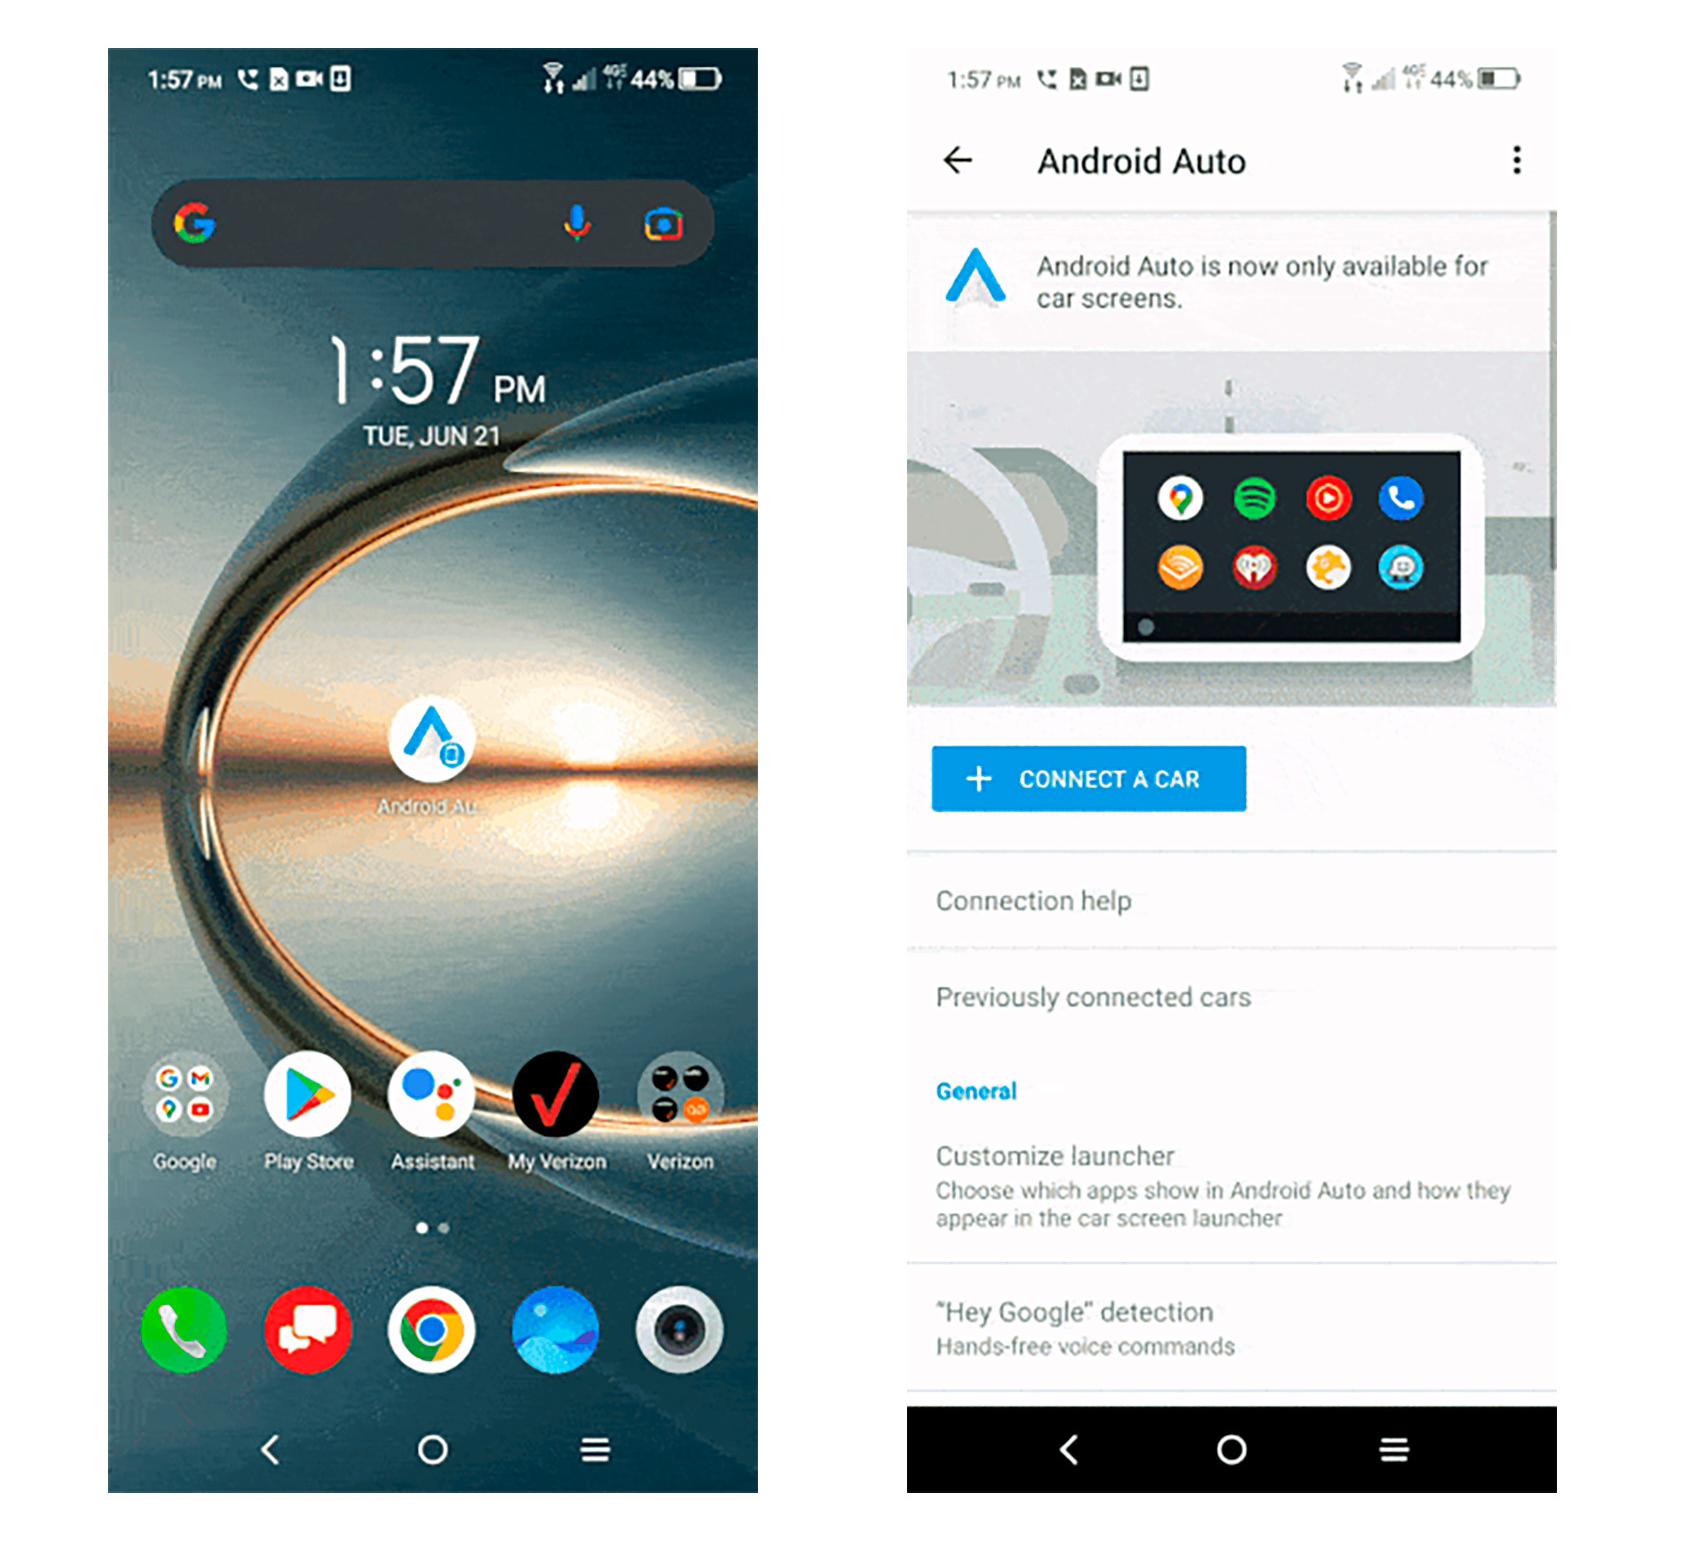 Pantallas y apps en Android Auto - Ayuda de Android Auto